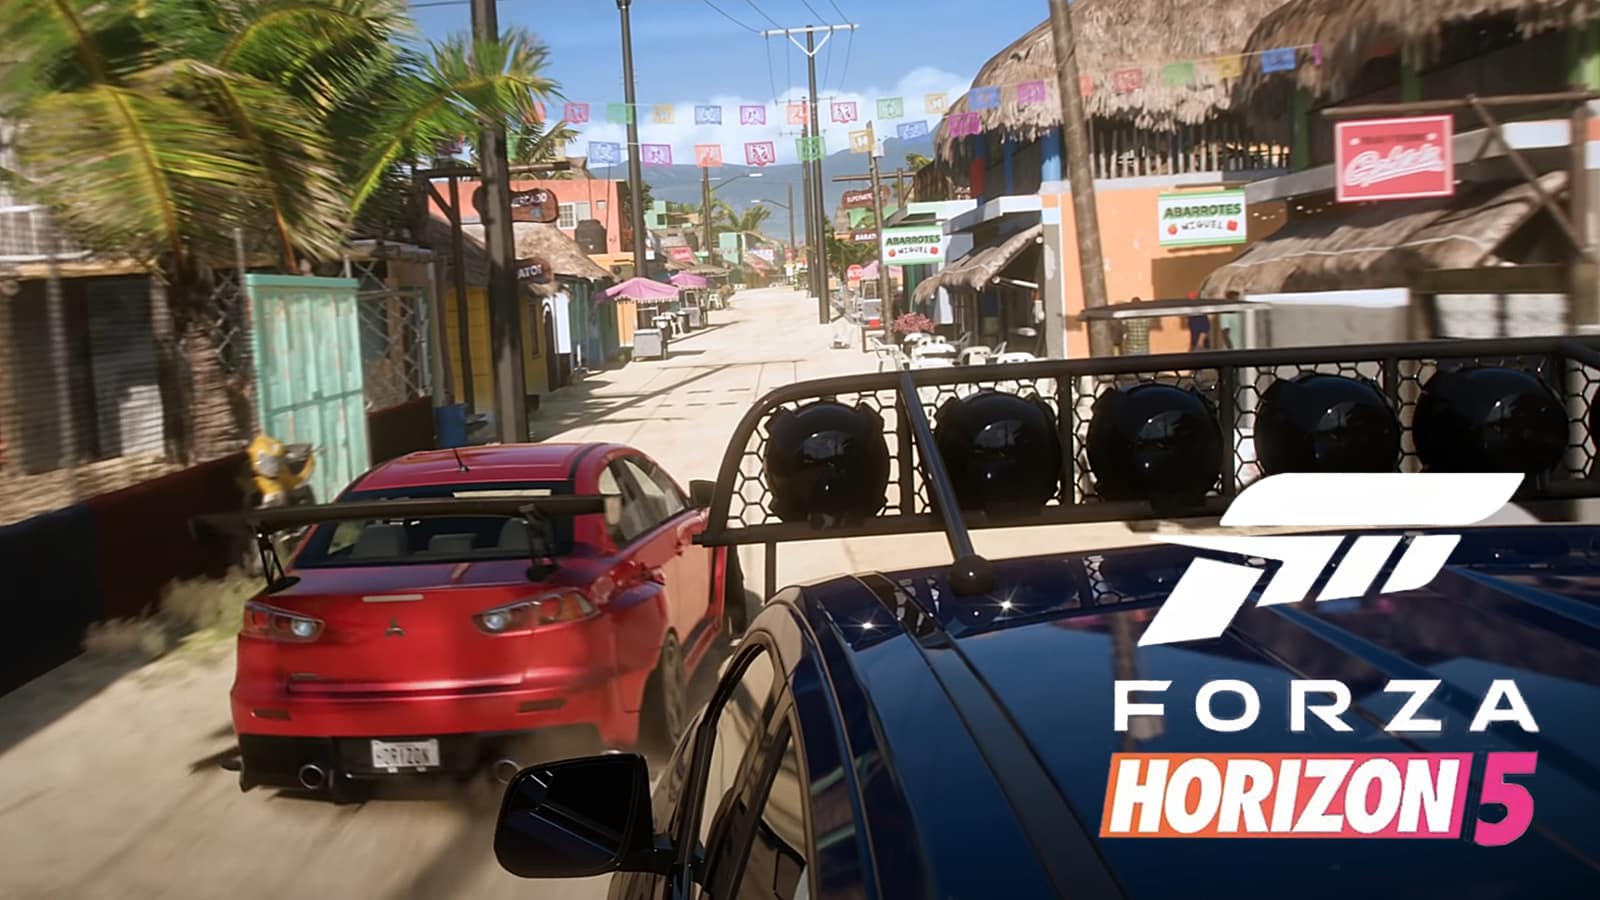 Ferrari LaFerrari - 2013 - Forza Horizon 2 - Test Drive Gameplay [HD] 